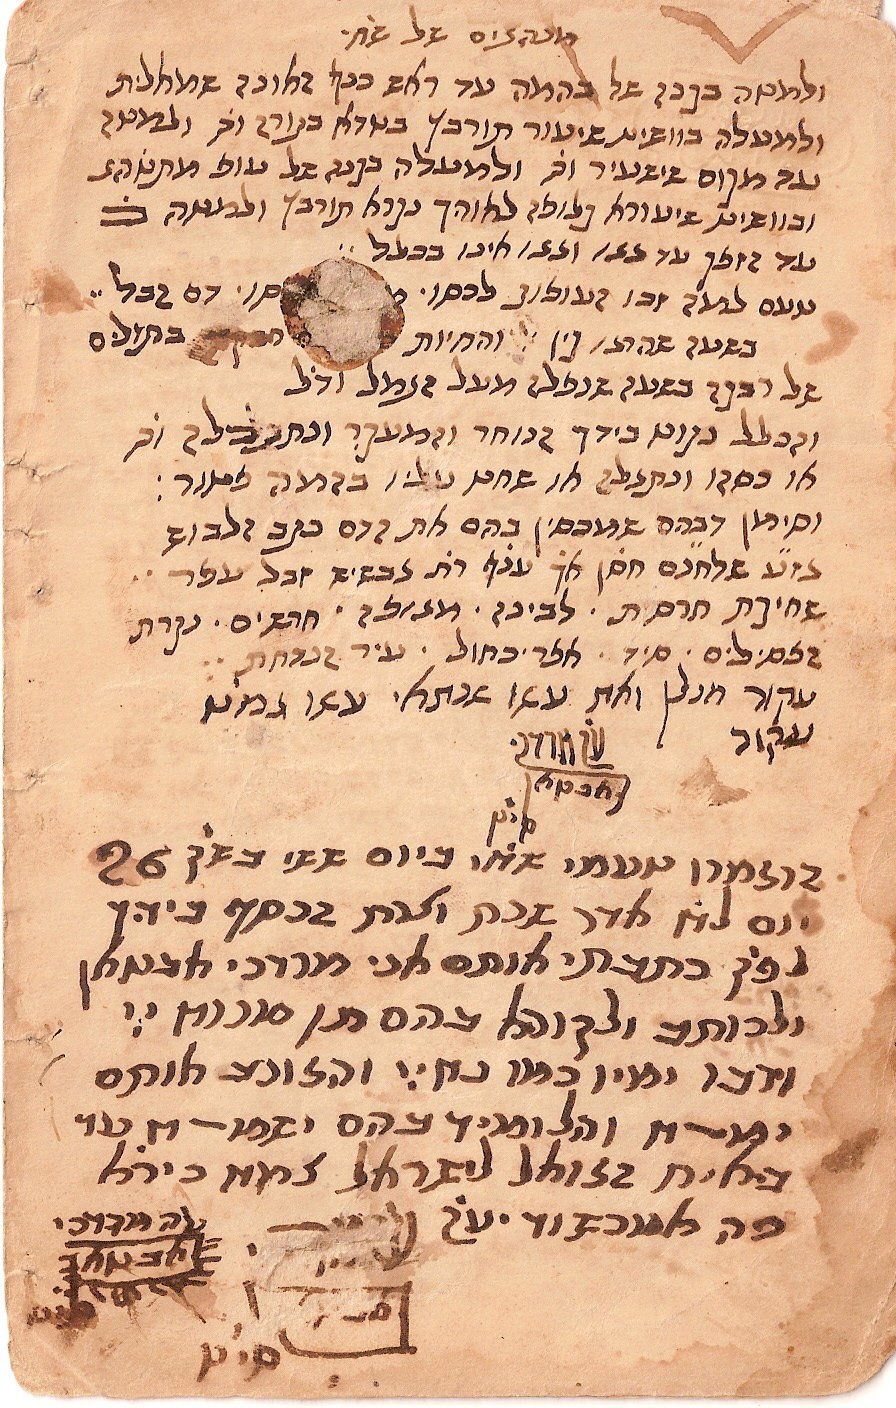 כתב ידו של רבי מרדכי אביטן זצ"ל - מנהגי והלכות שחיטה - מרוקו